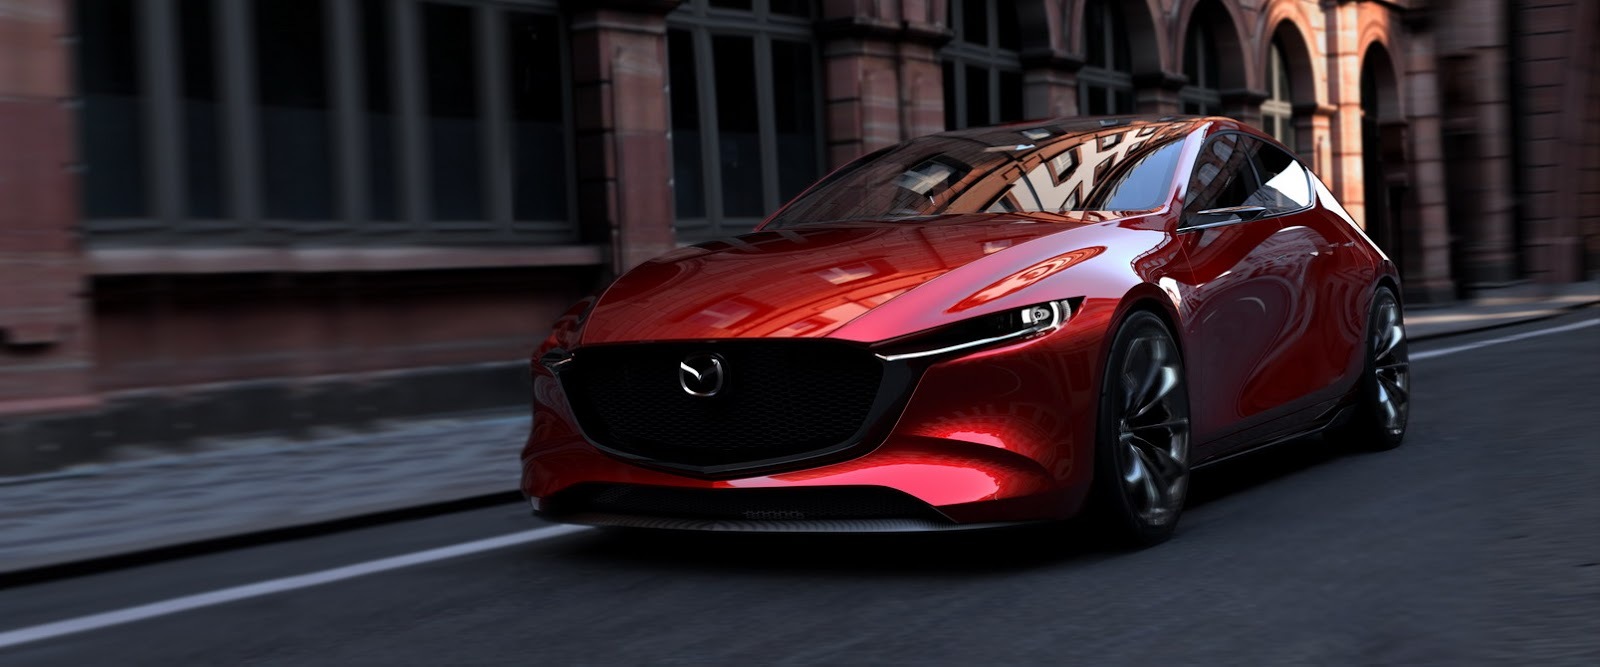 Mazda-Kai-Concept-173.jpg